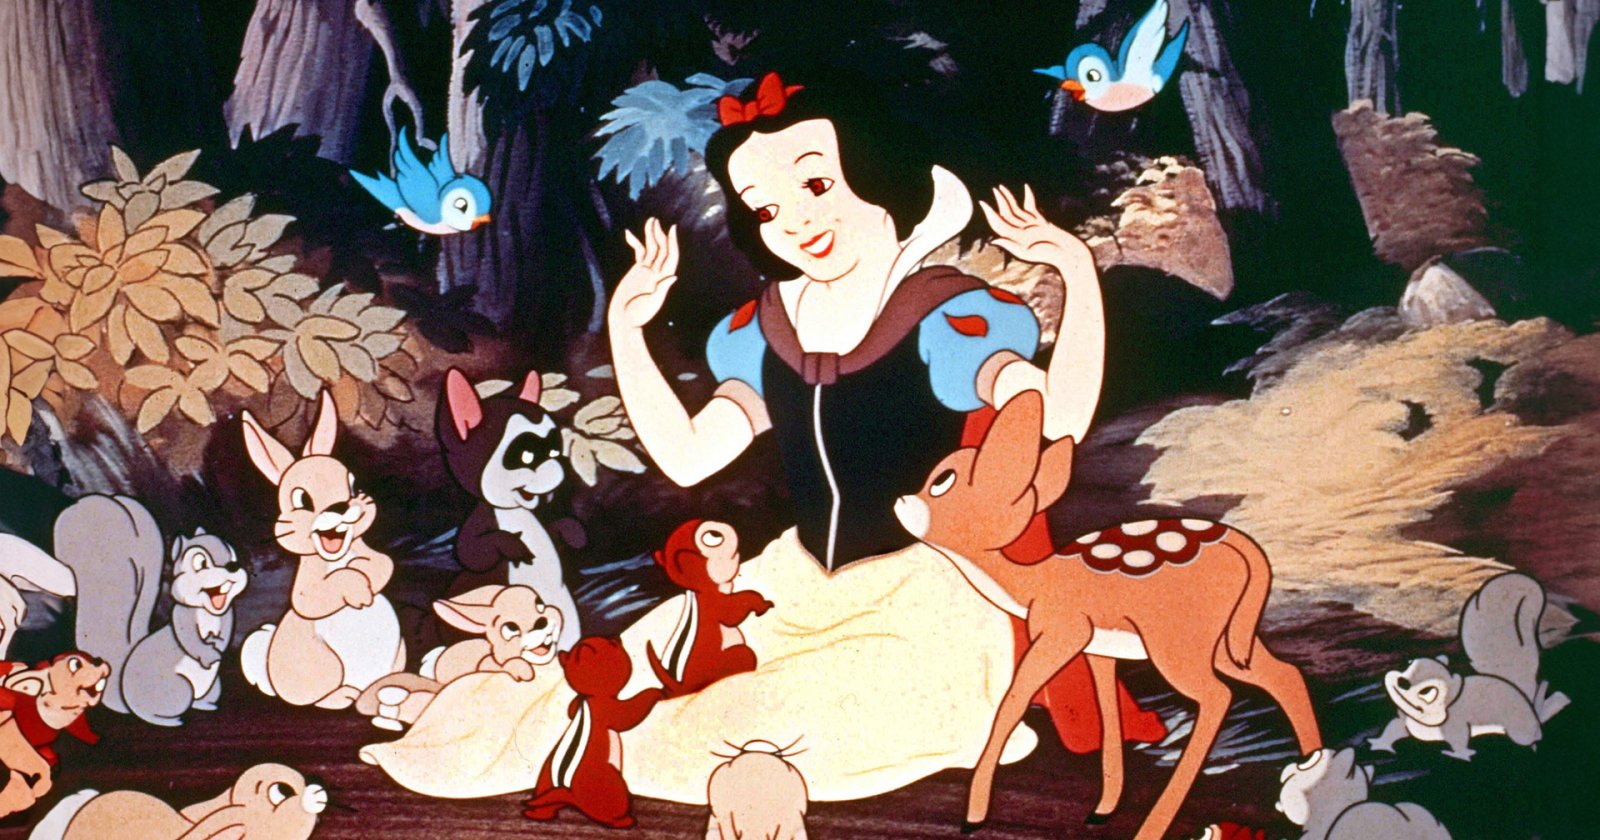 “พ่อรู้คงกริ้ว!” ลูกชายผู้กำกับ ‘Snow White’ แอนิเมชันต้นฉบับปี 1937 วิจารณ์ยับ ‘Snow White’ ฉบับคนแสดง